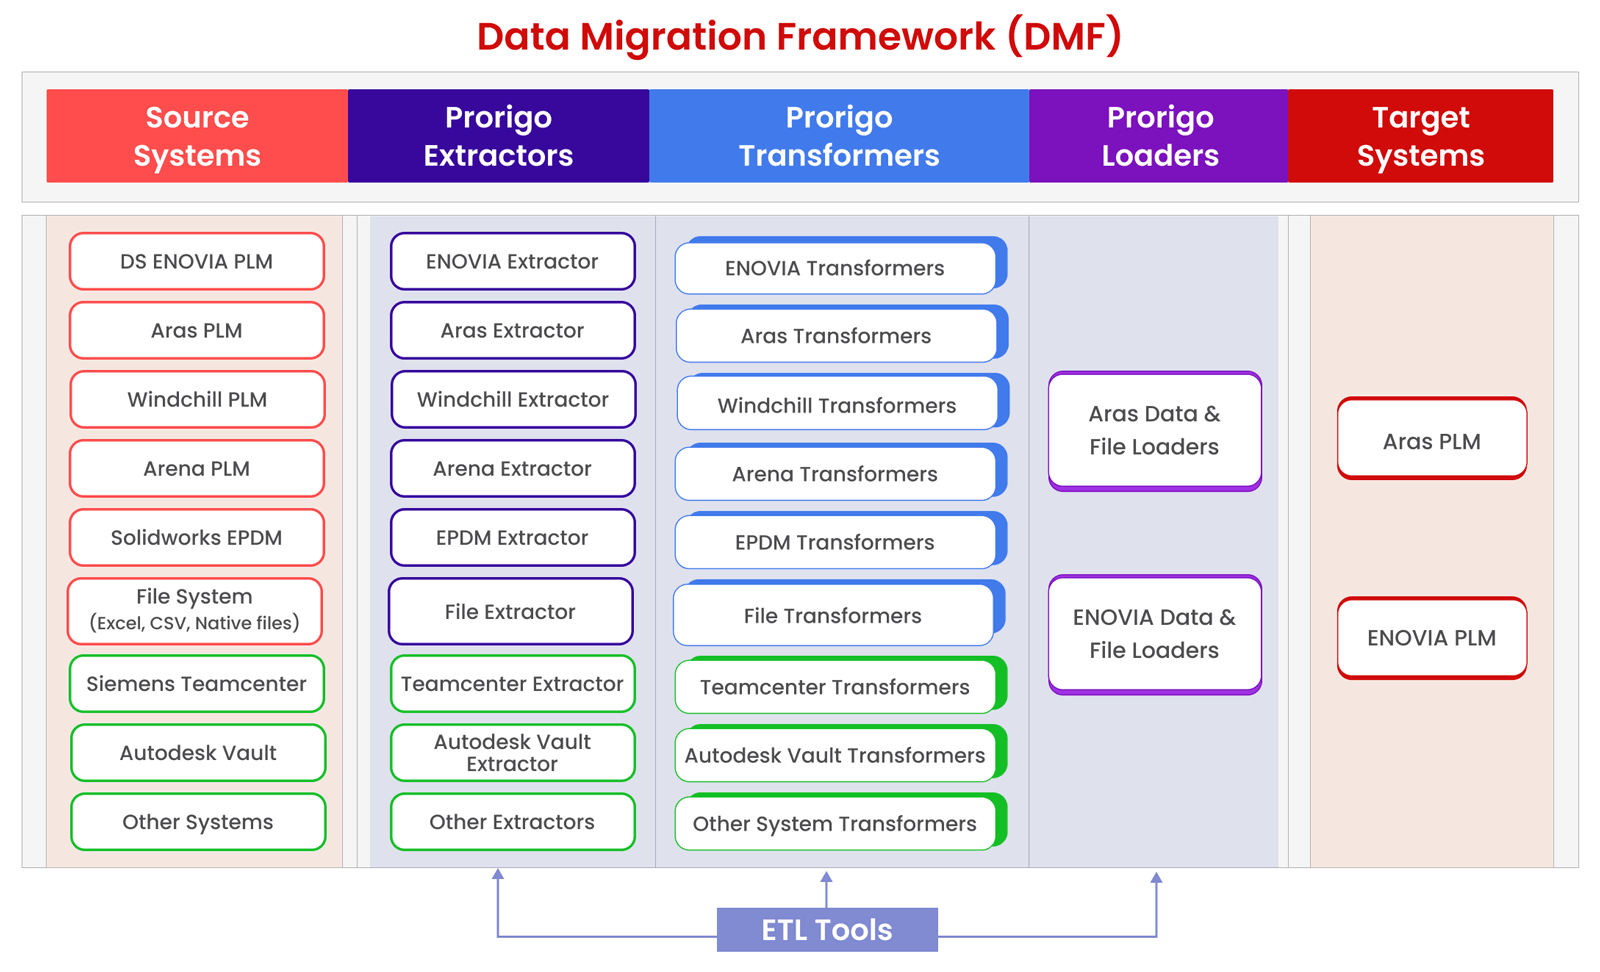 Prorigo Data Migration Framework